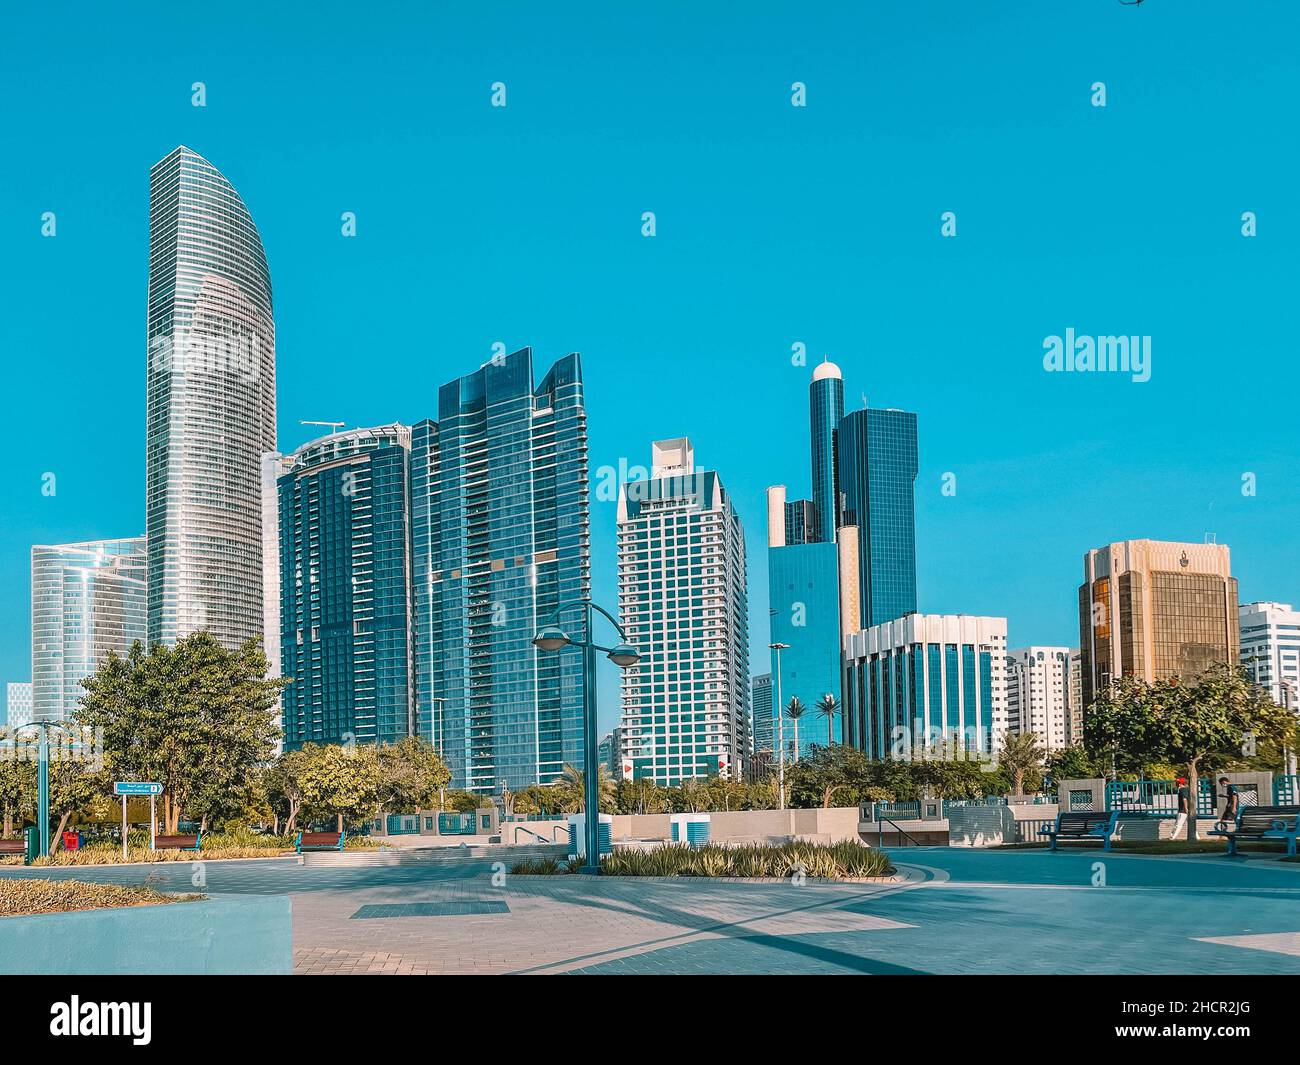 Centro de la ciudad de Abu Dhabi (EAU): Carretera y playa de Abu Dhabi, torres emblemática Foto de stock